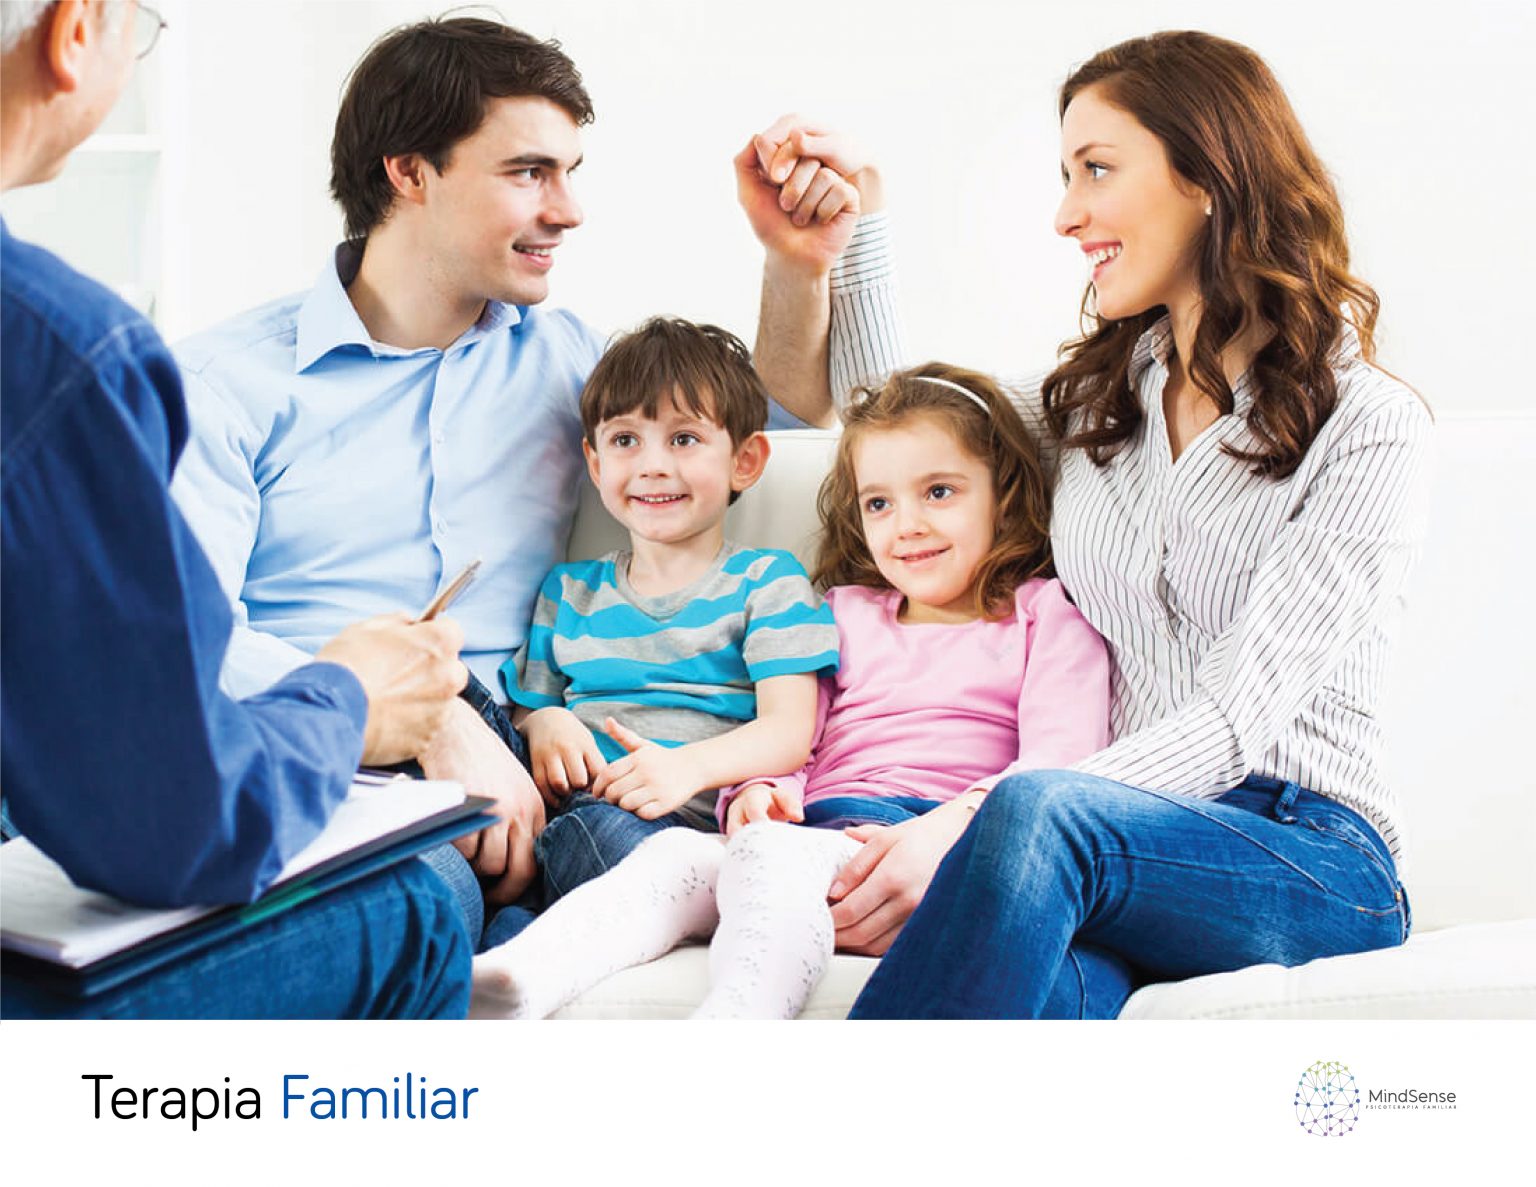 Apoyar a la familia a mejorar la comunicación, entender los patrones actuales y analizar cuales patrones sería favorable modificar y lograr una mejora general en la comprensión y convivencia familiar.